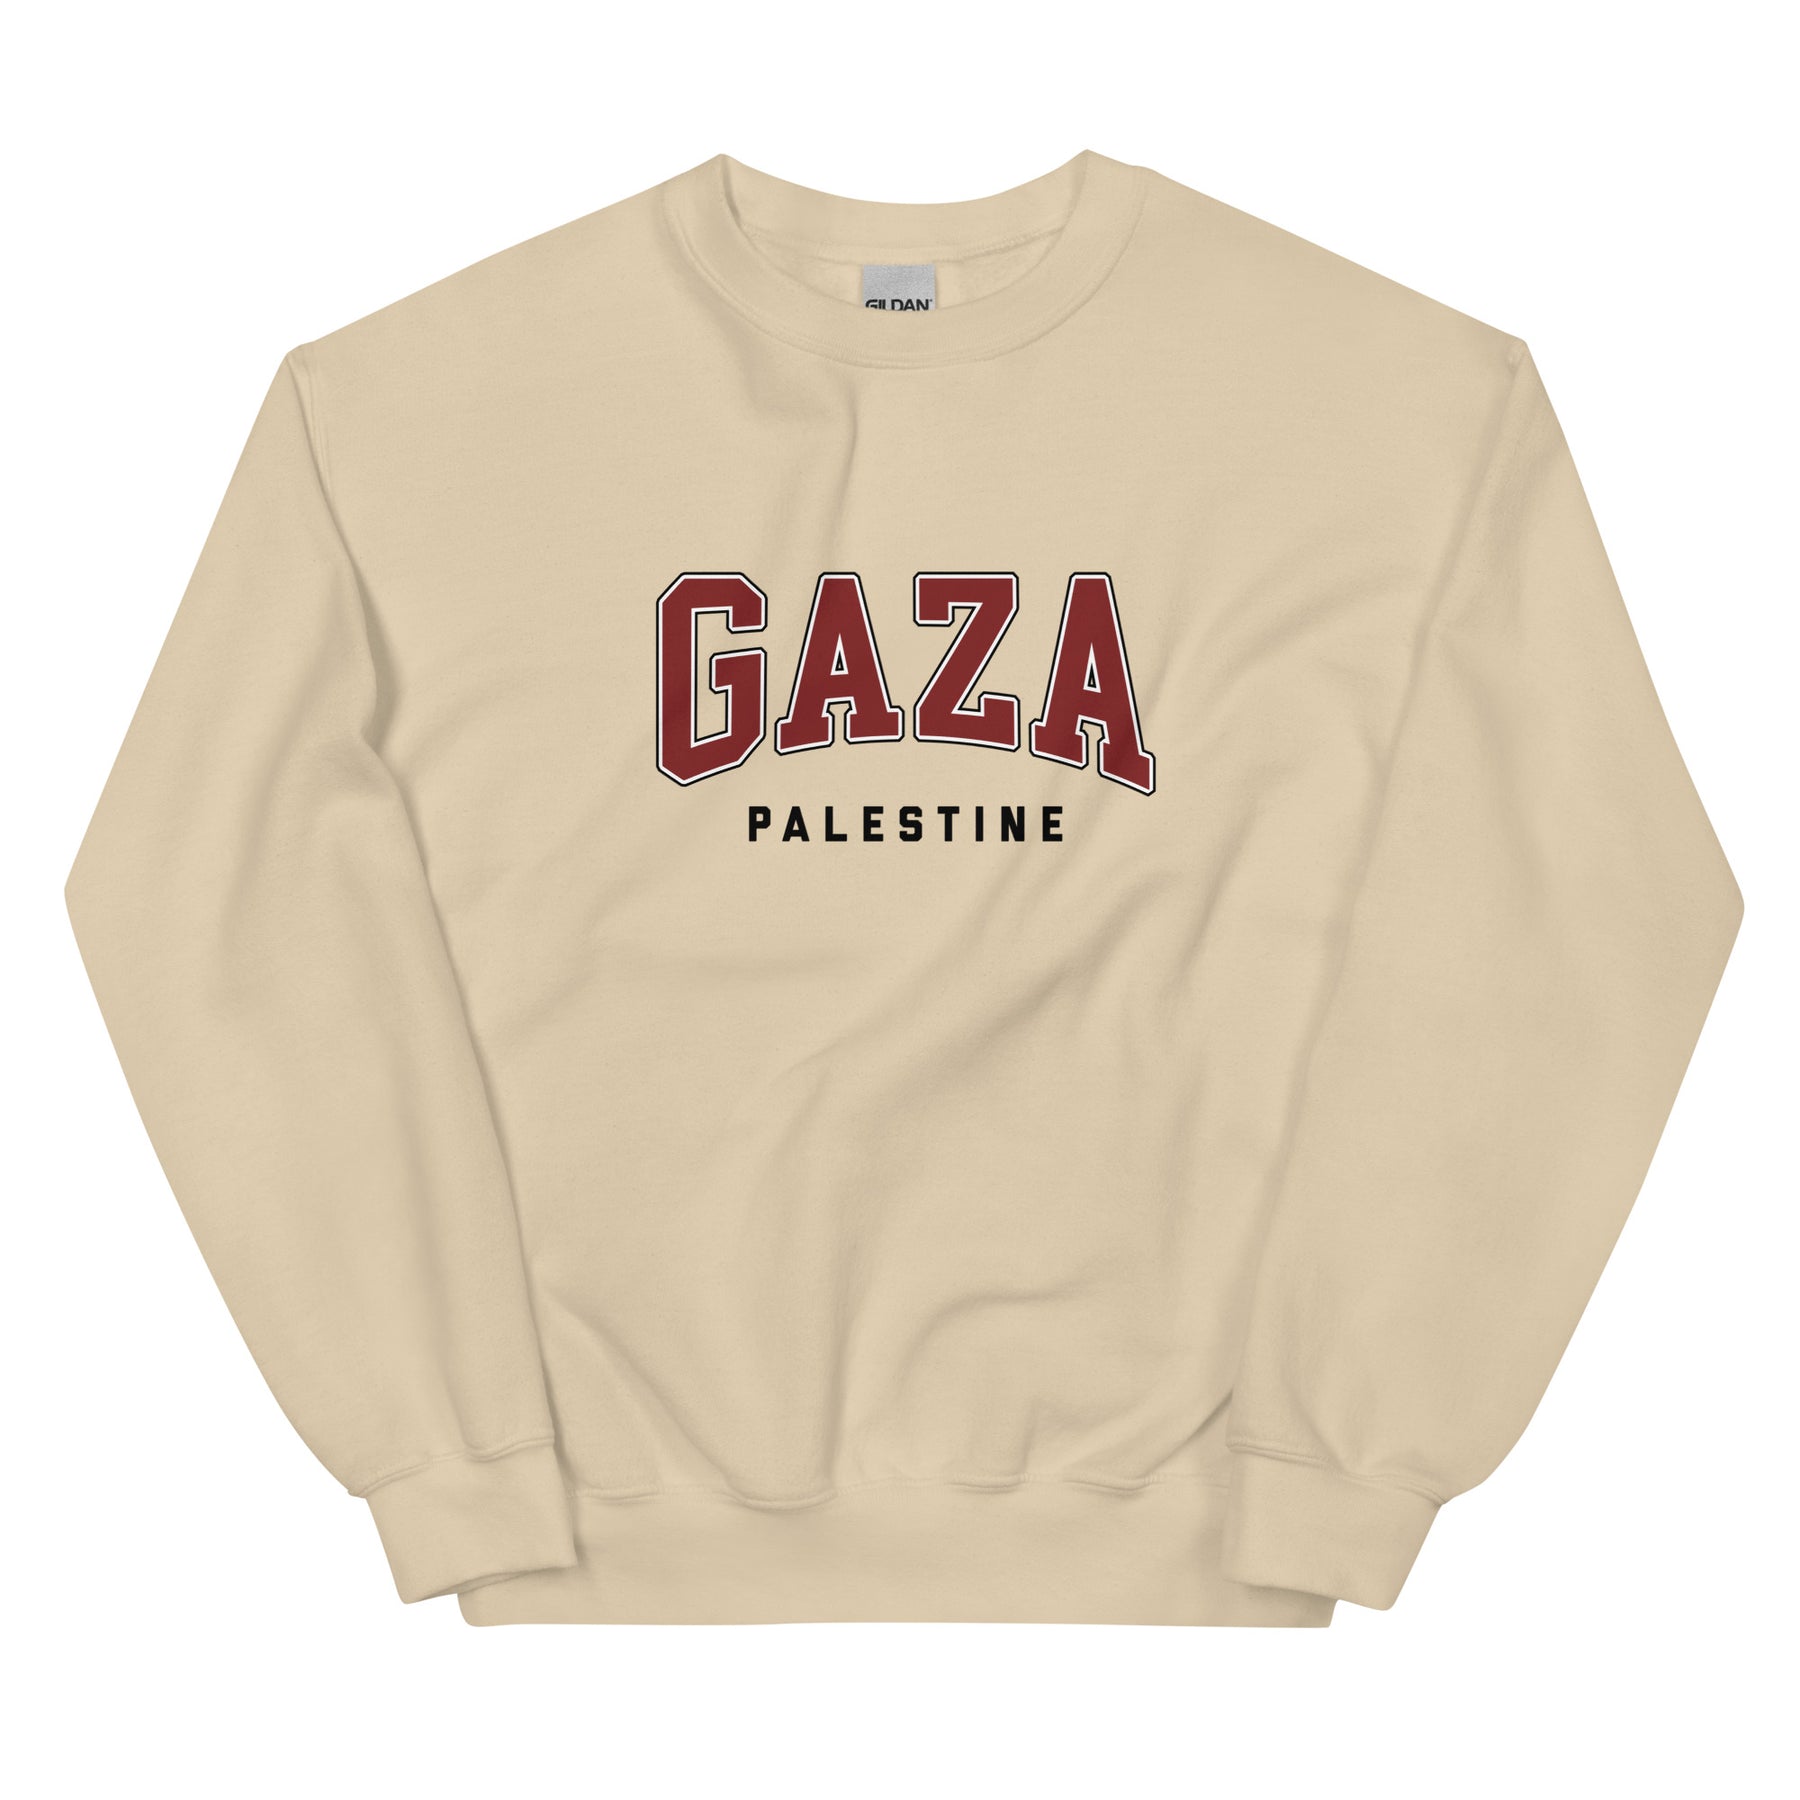 Gaza, Palestine - Sweatshirt